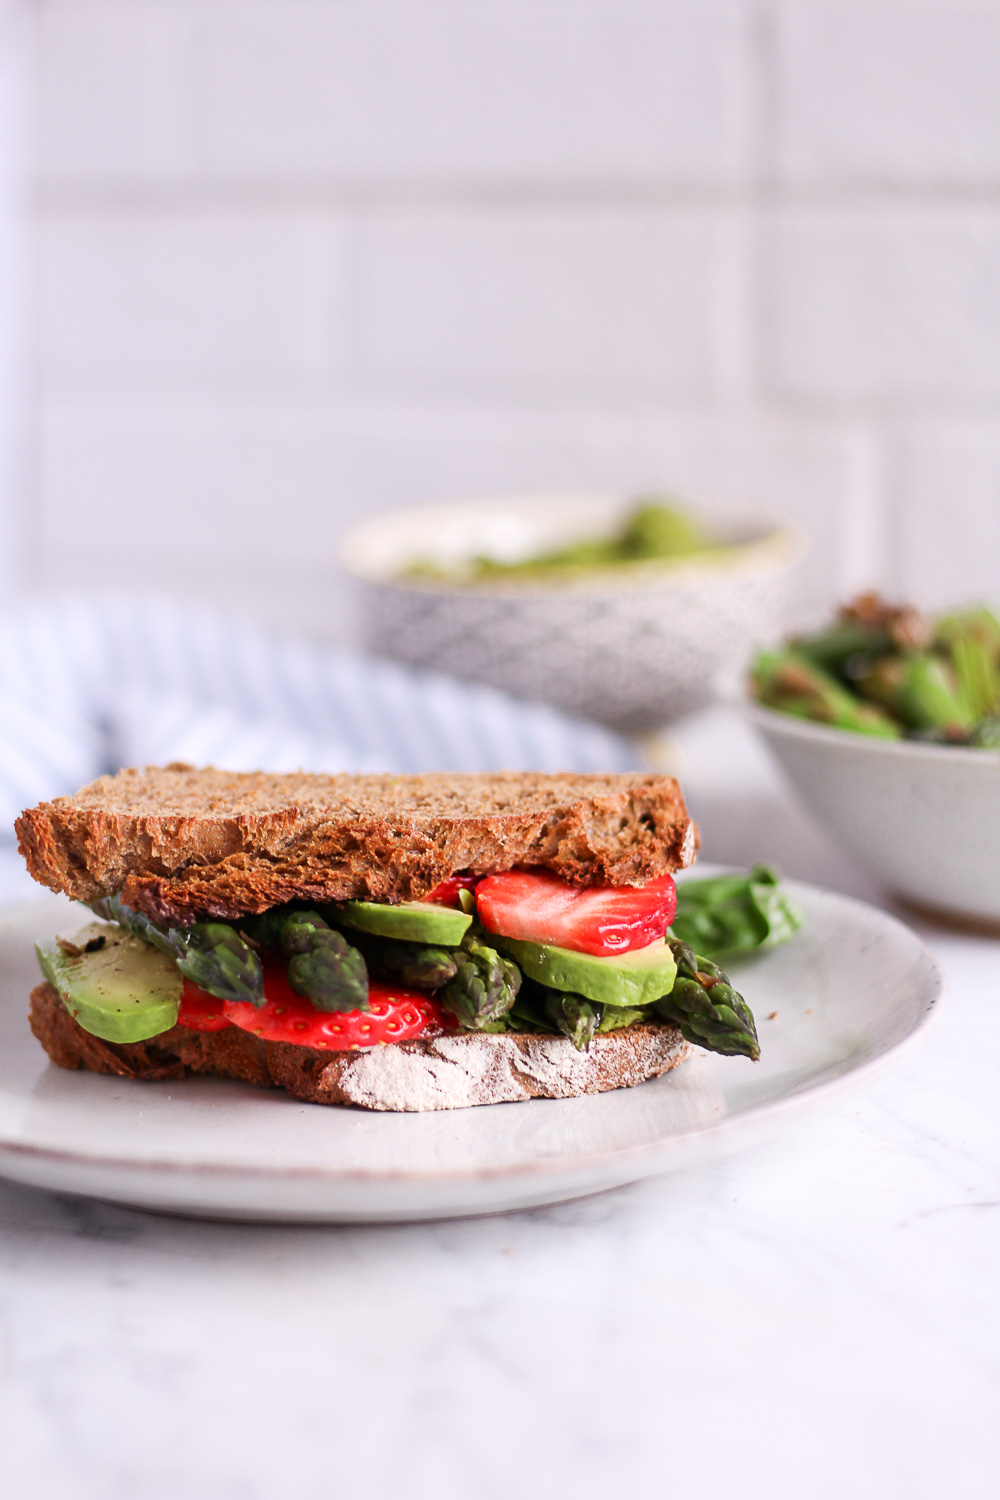 Spargel-Sandwich mit Erbsen-Basilikum-Creme und Erdbeeren - rein pflanzlich, vegan, glutenfreie Option, ohne raffinierten Zucker - de.heavenlynnhealthy.com